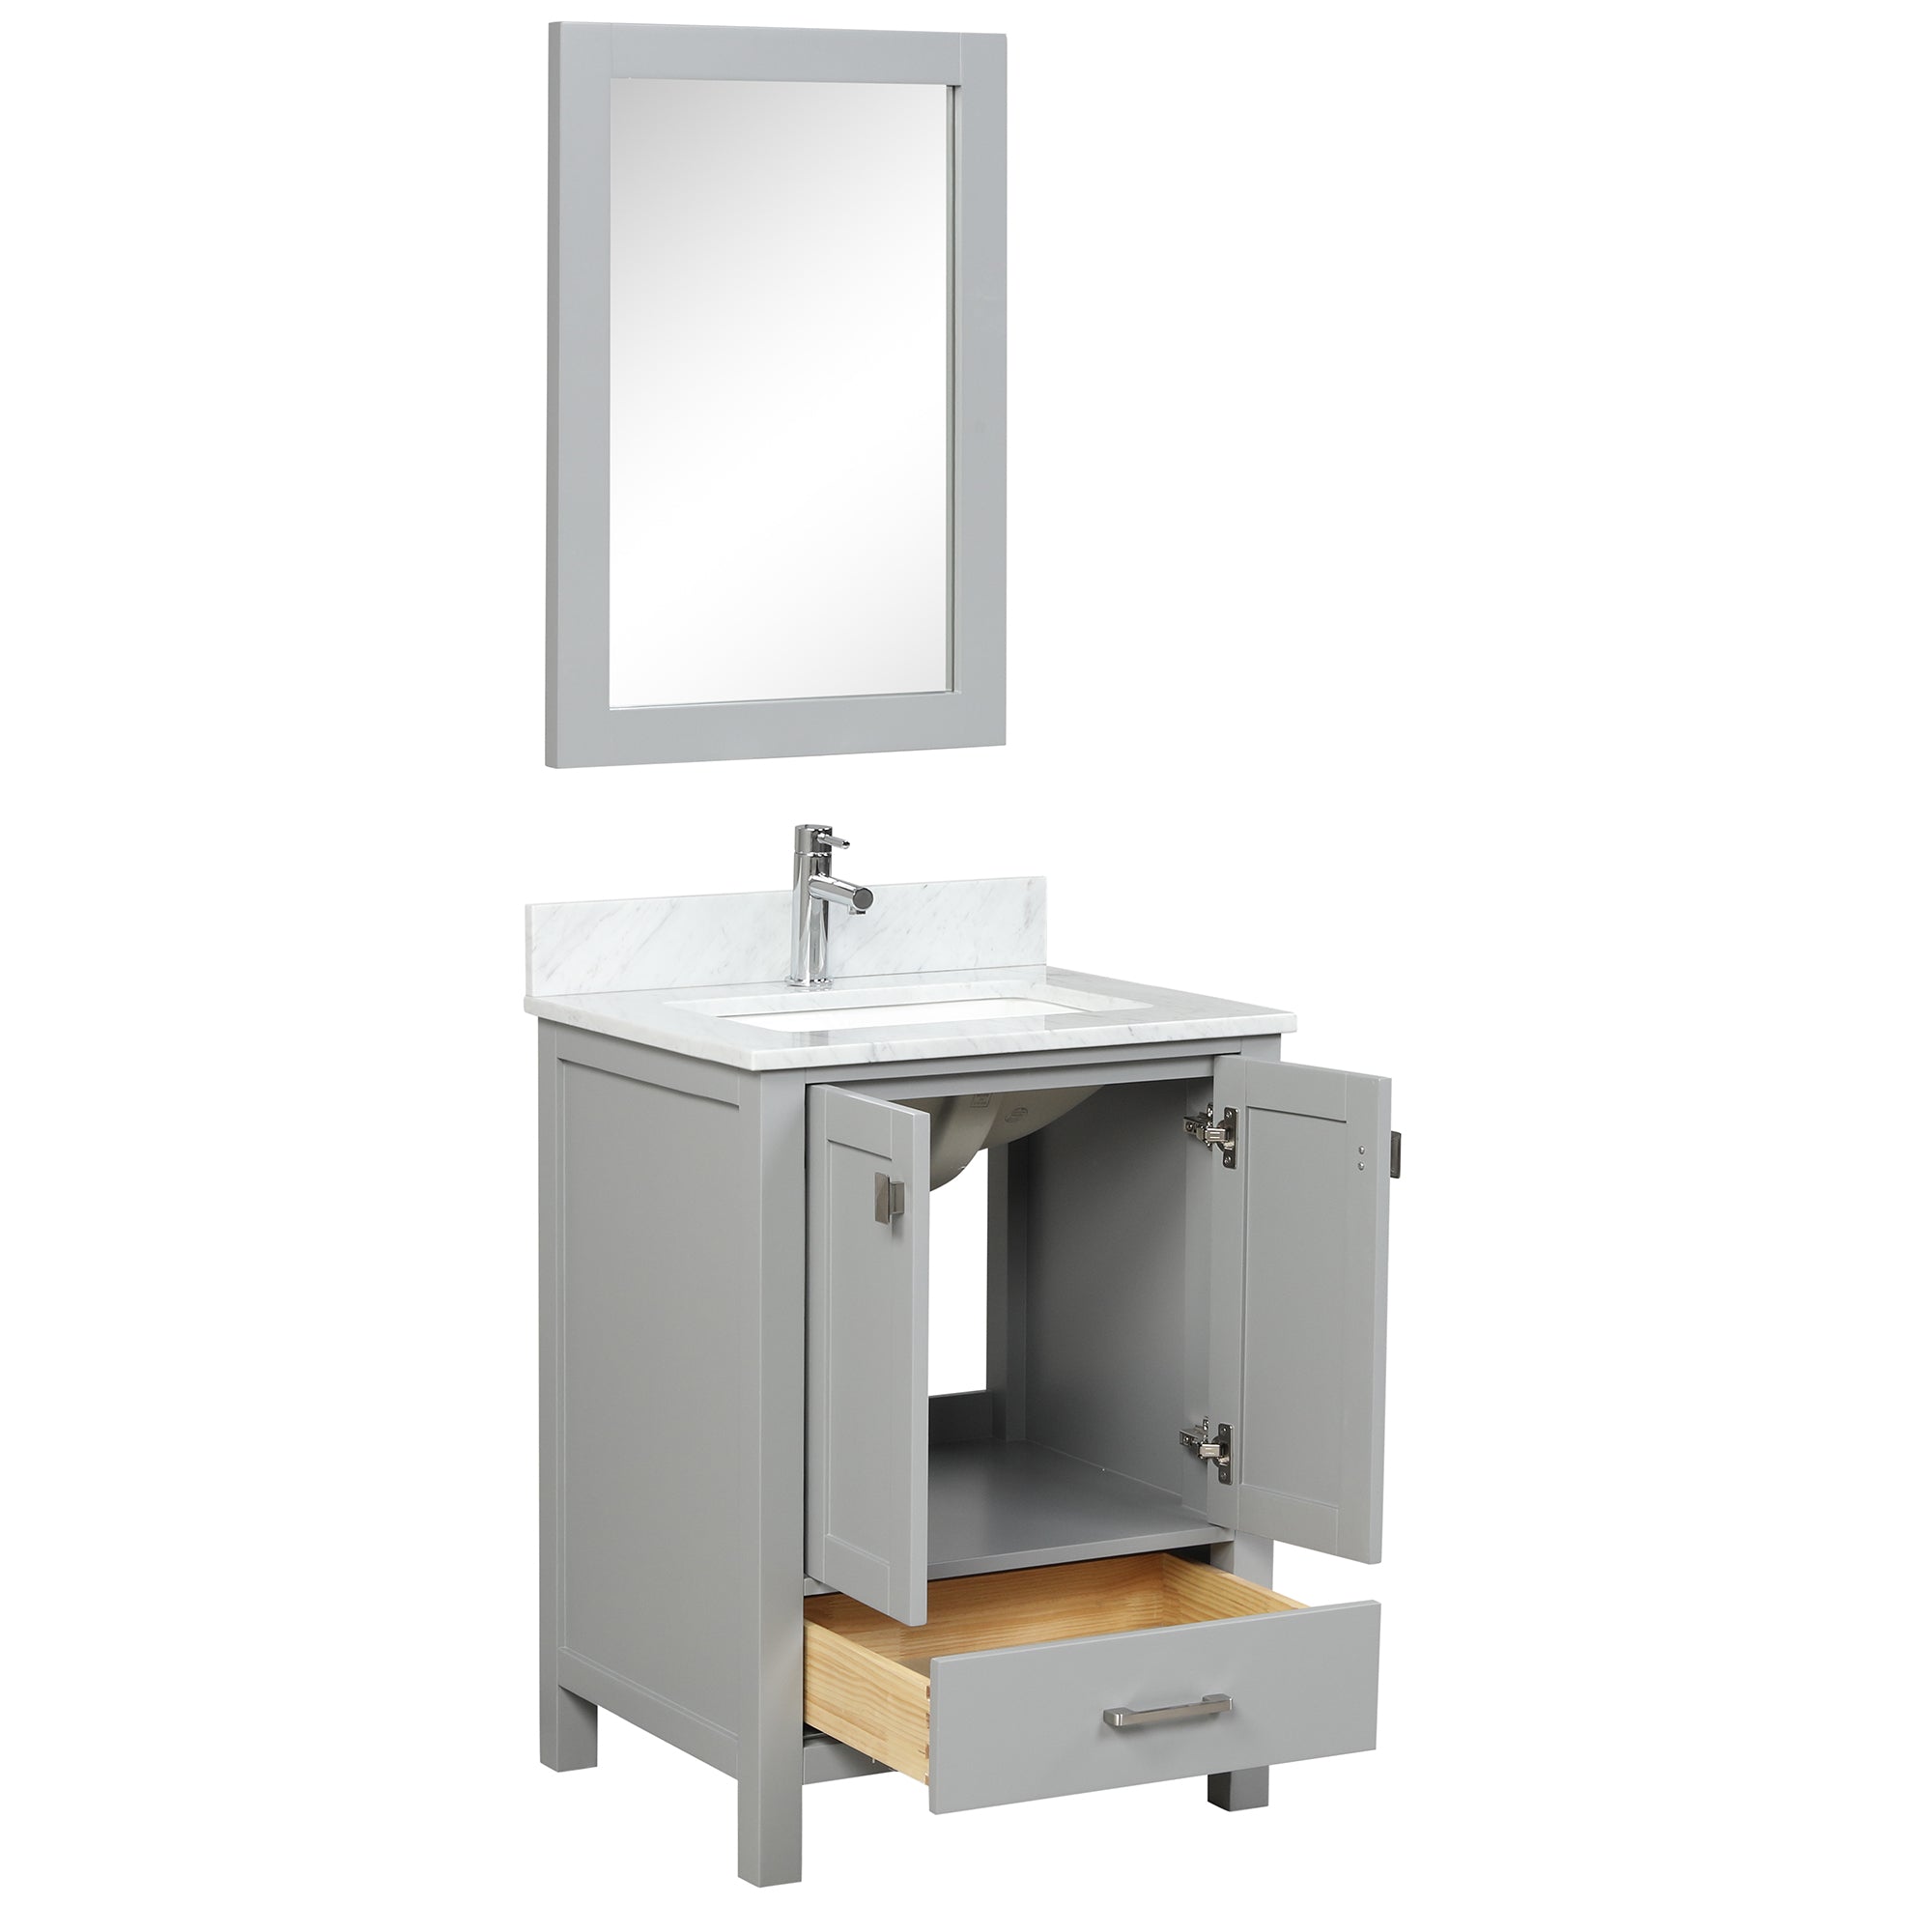 Geneva 24" Grey Bathroom Vanity with Marble SInk - Contemporary Bathroom Vanity